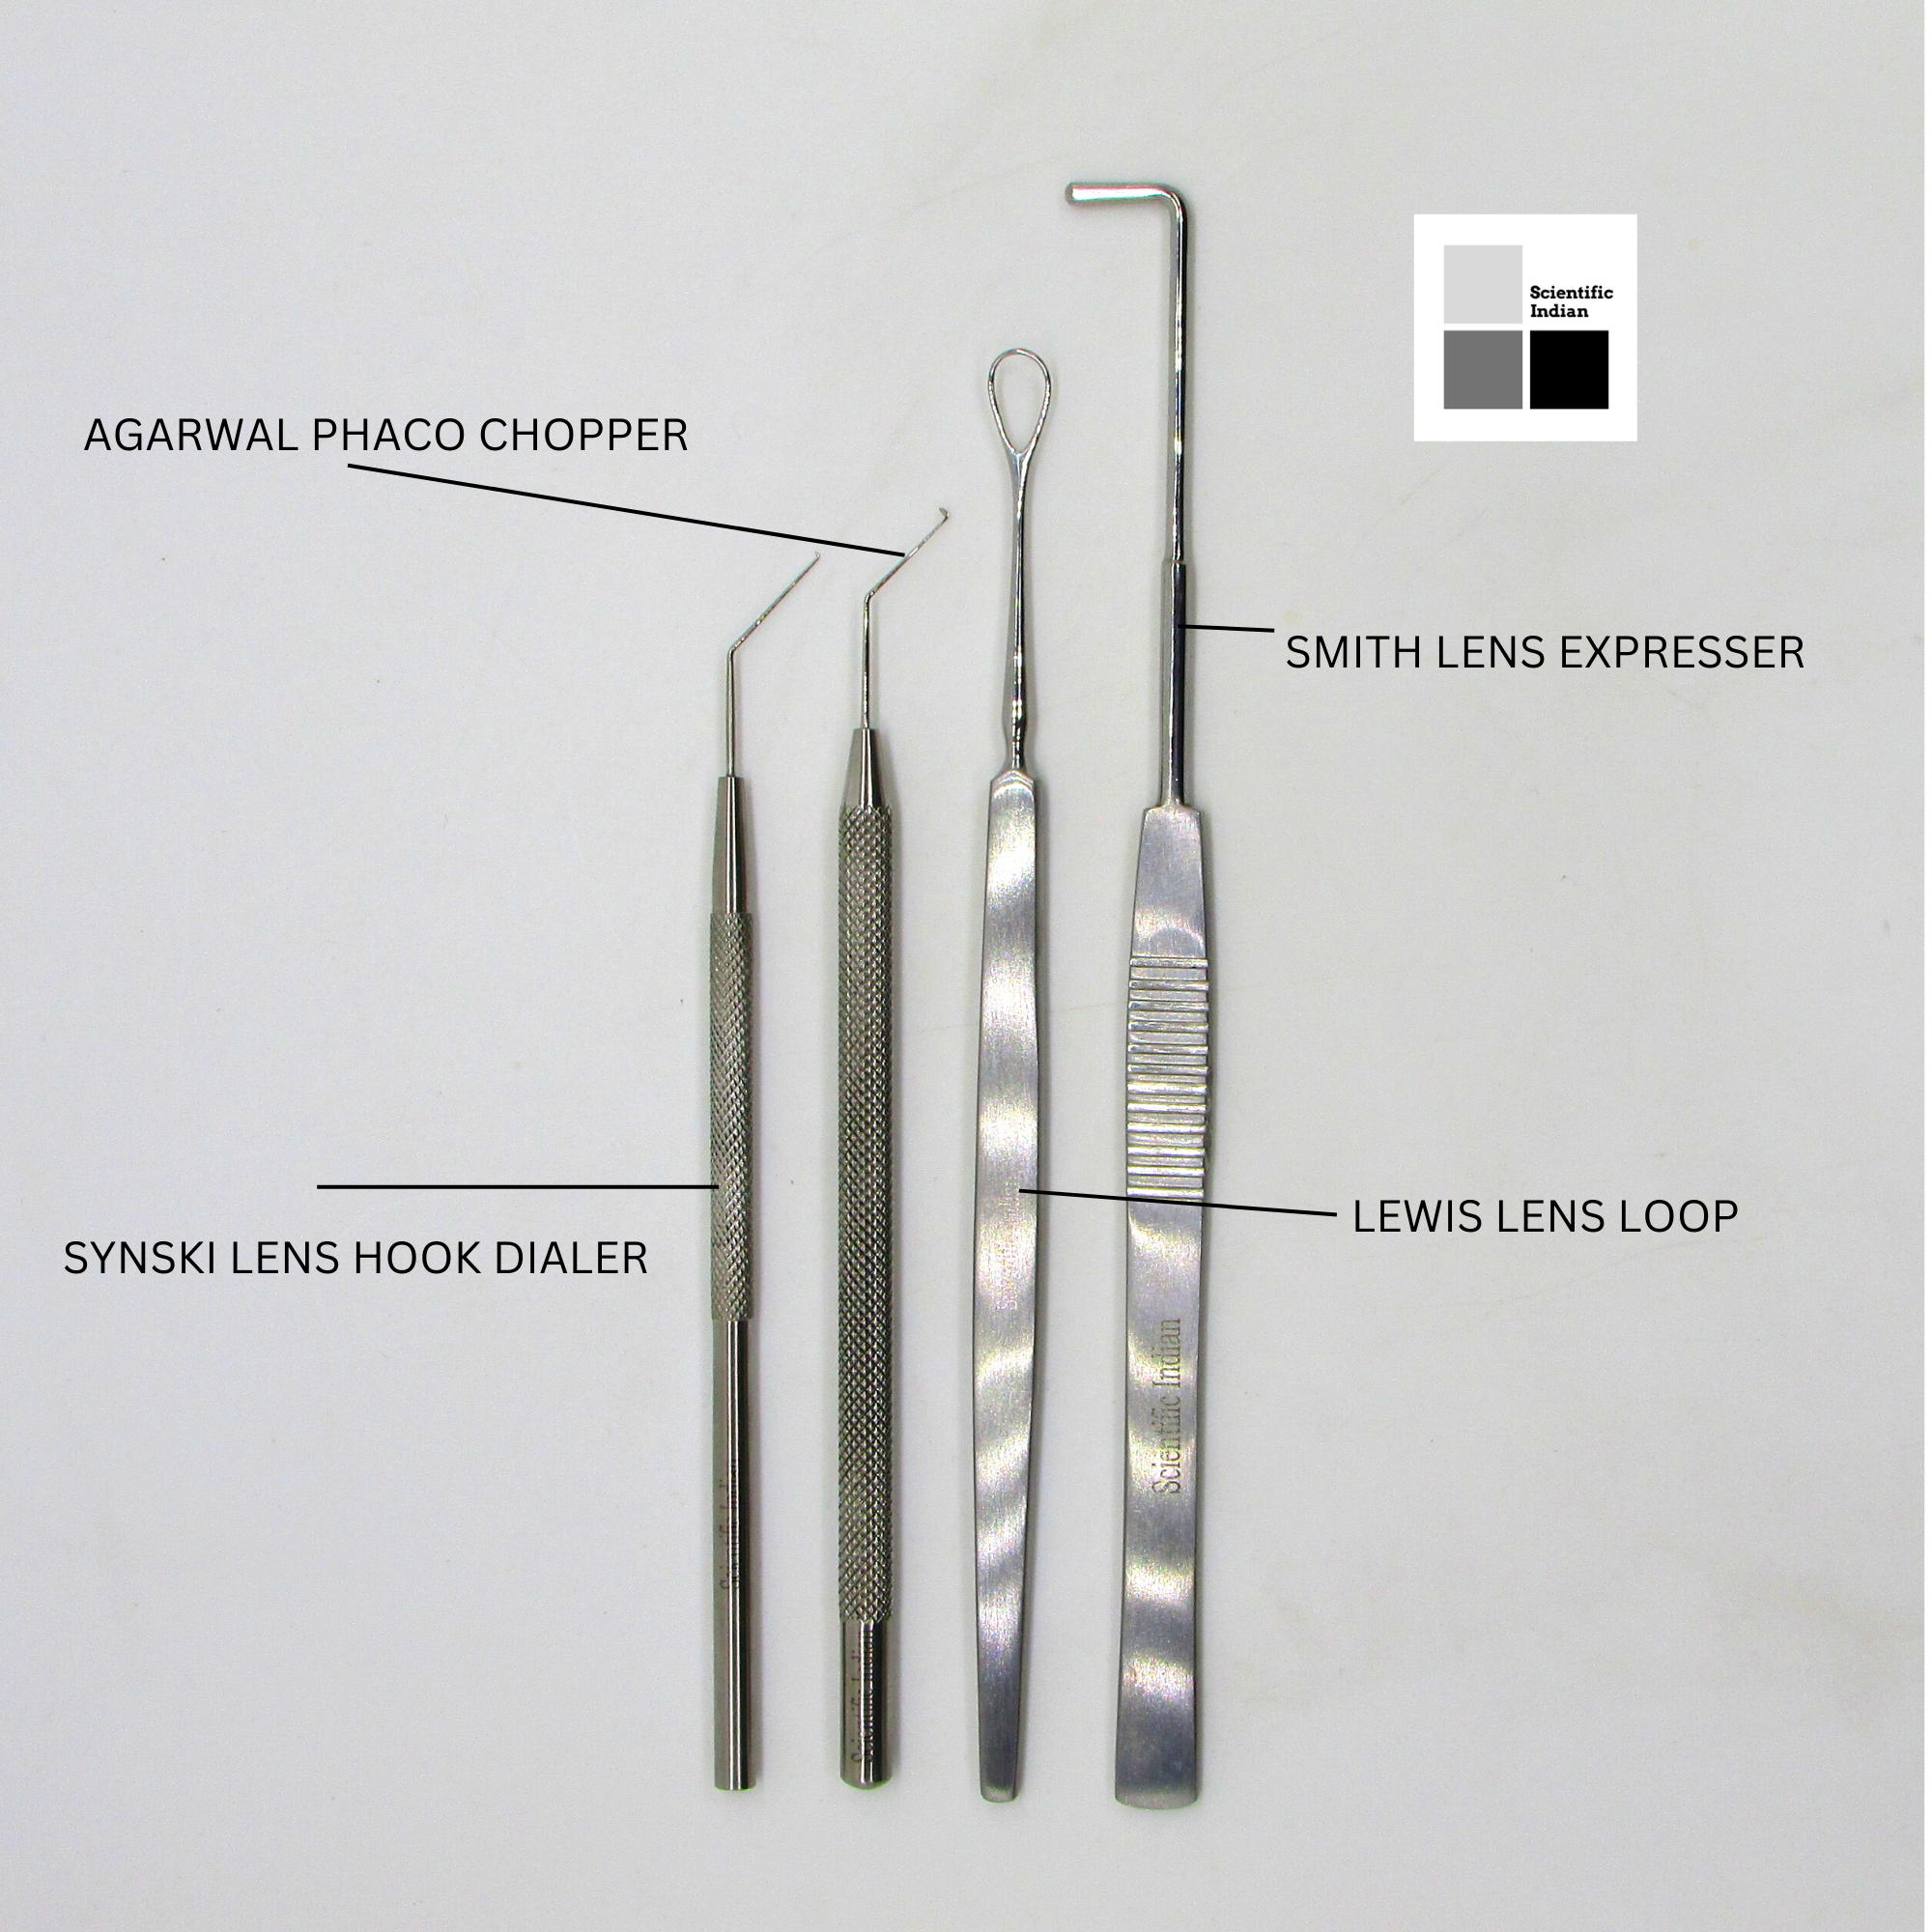 Instruments for lens manipulation